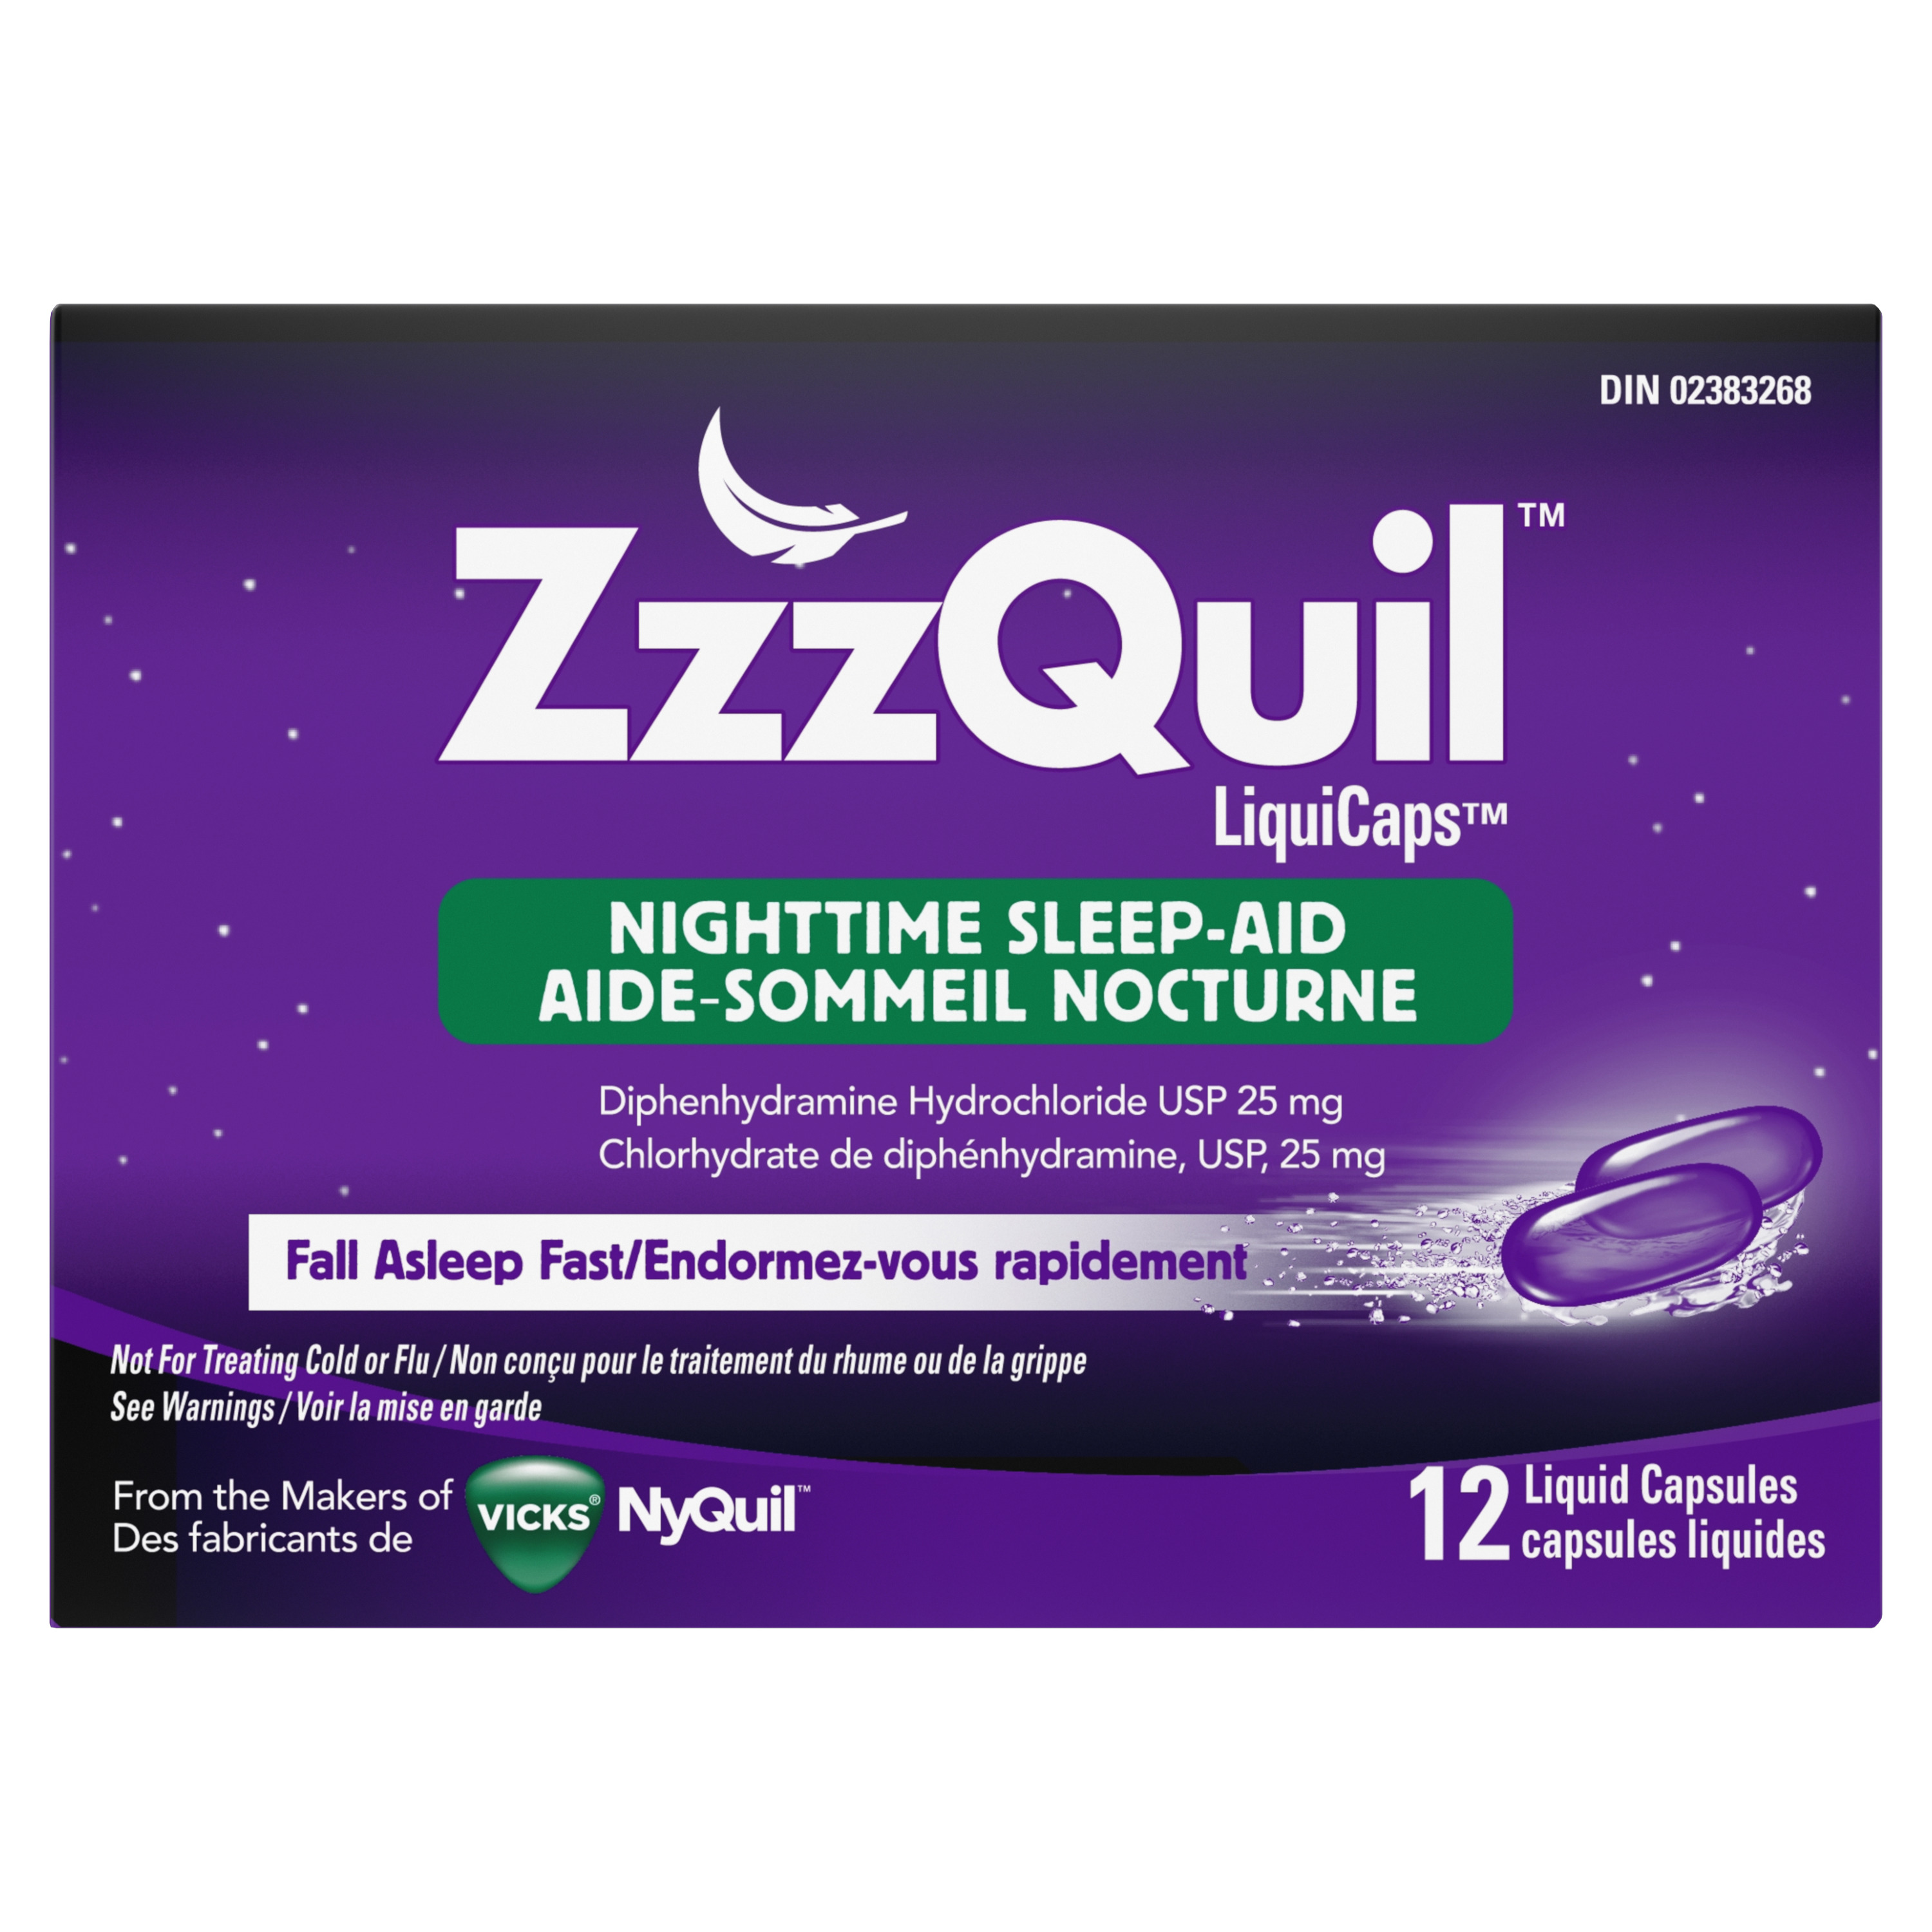 Aide-sommeil nocturne Vicks ZzzQuil LiquiCaps, 12 unités - SmartLabel™